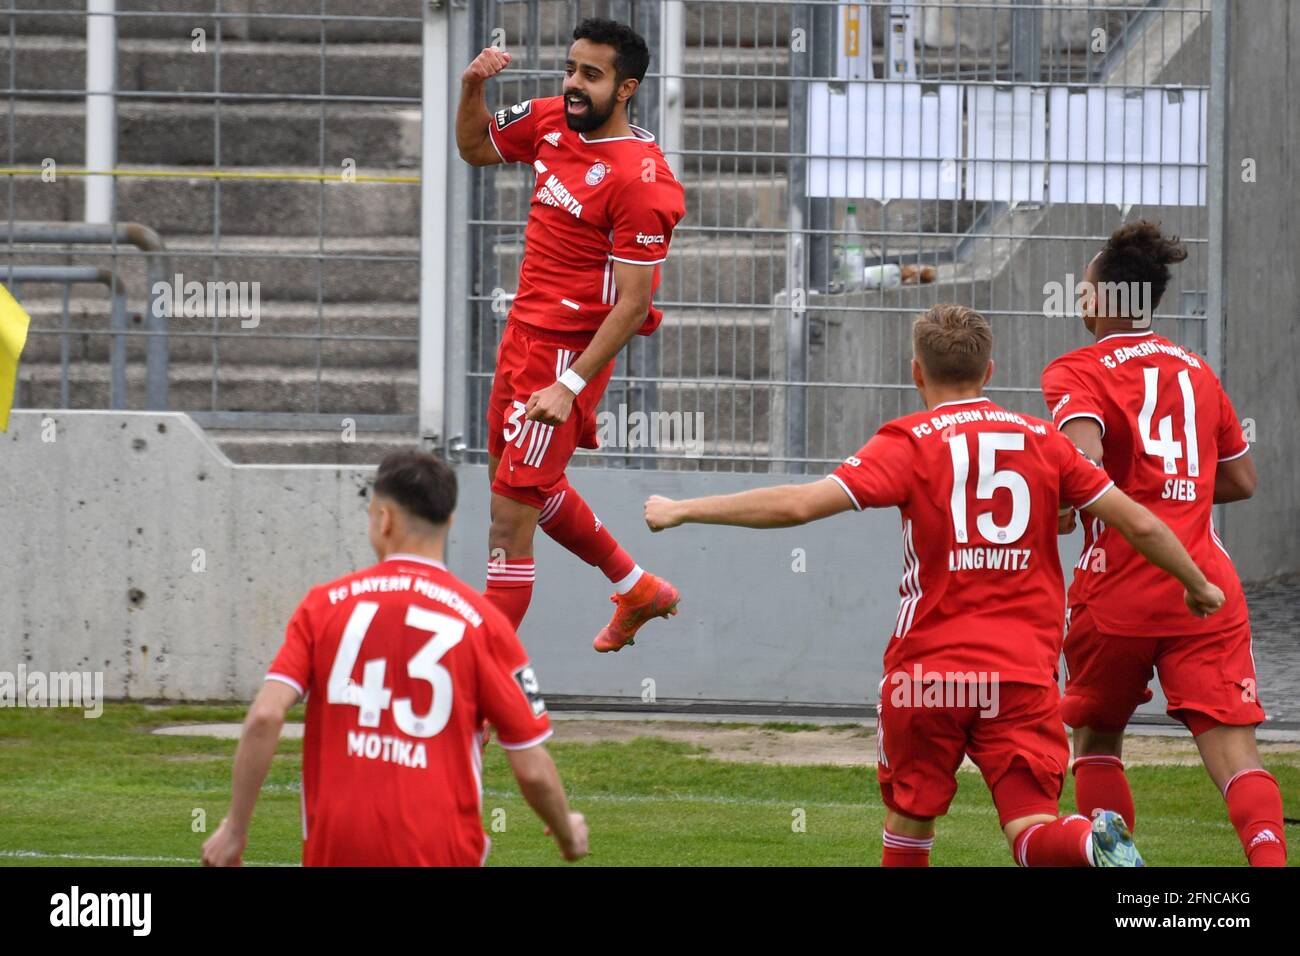 MunichGRUENWALDER STADION. 16th May, 2021. goaljubel Sarpreet SINGH (FCB)  after goal for 1-2, jubilation, joy, enthusiasm, action. Soccer 3rd league,  Liga3, TSV Munich 1860-FC Bayern Munich II, on May 16, 2021 in